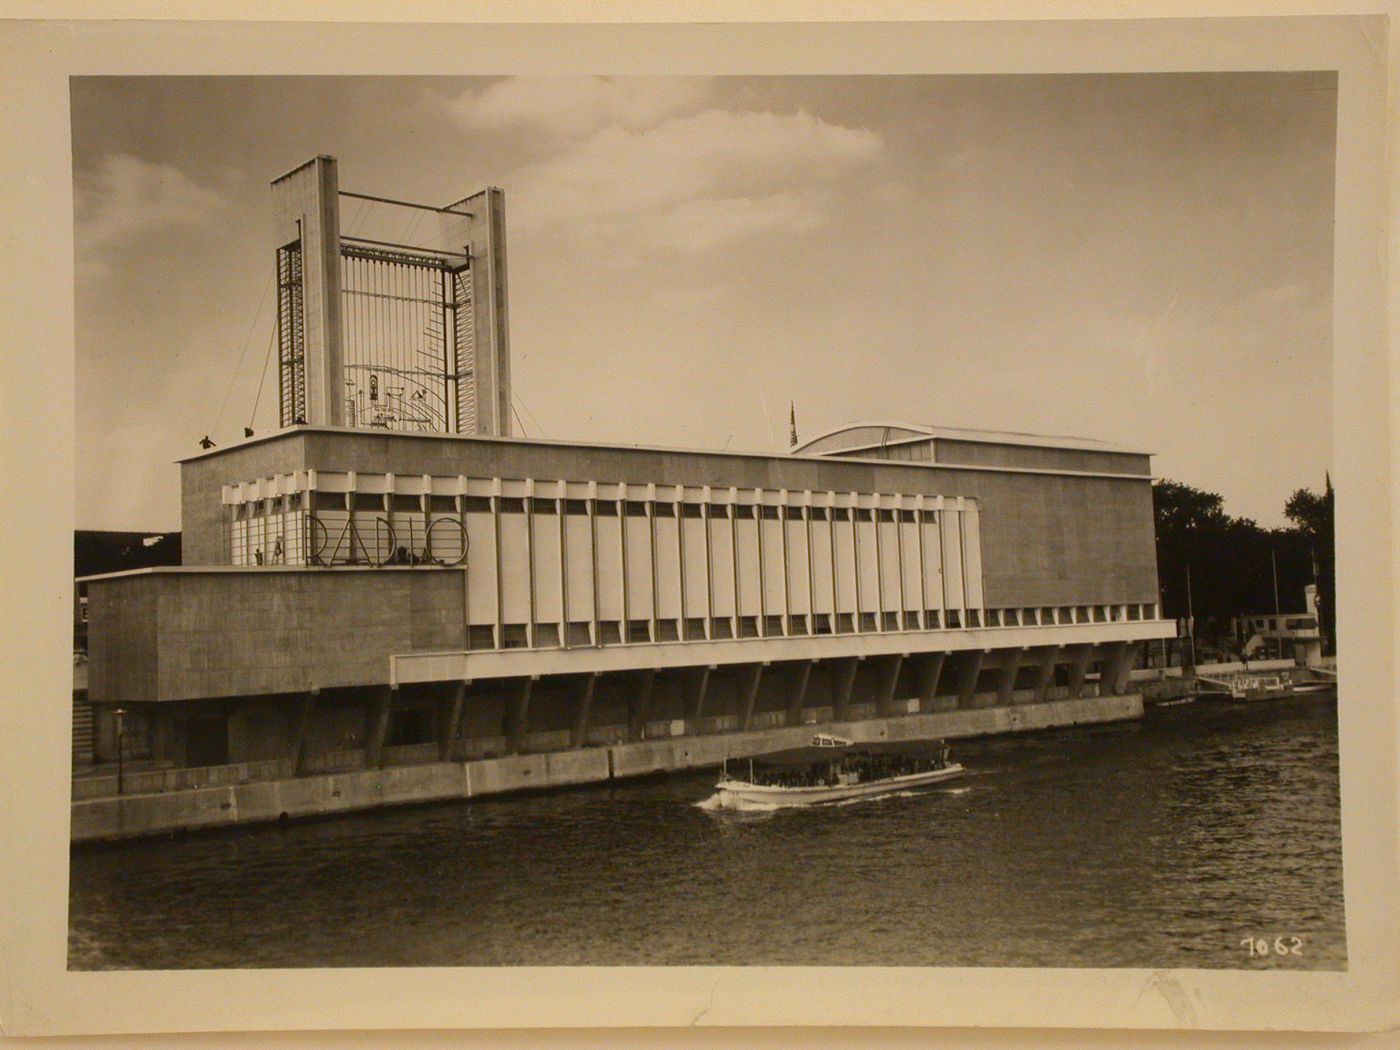 View of the Pavillon de la Radio, 1937 Exposition internationale, Paris, France